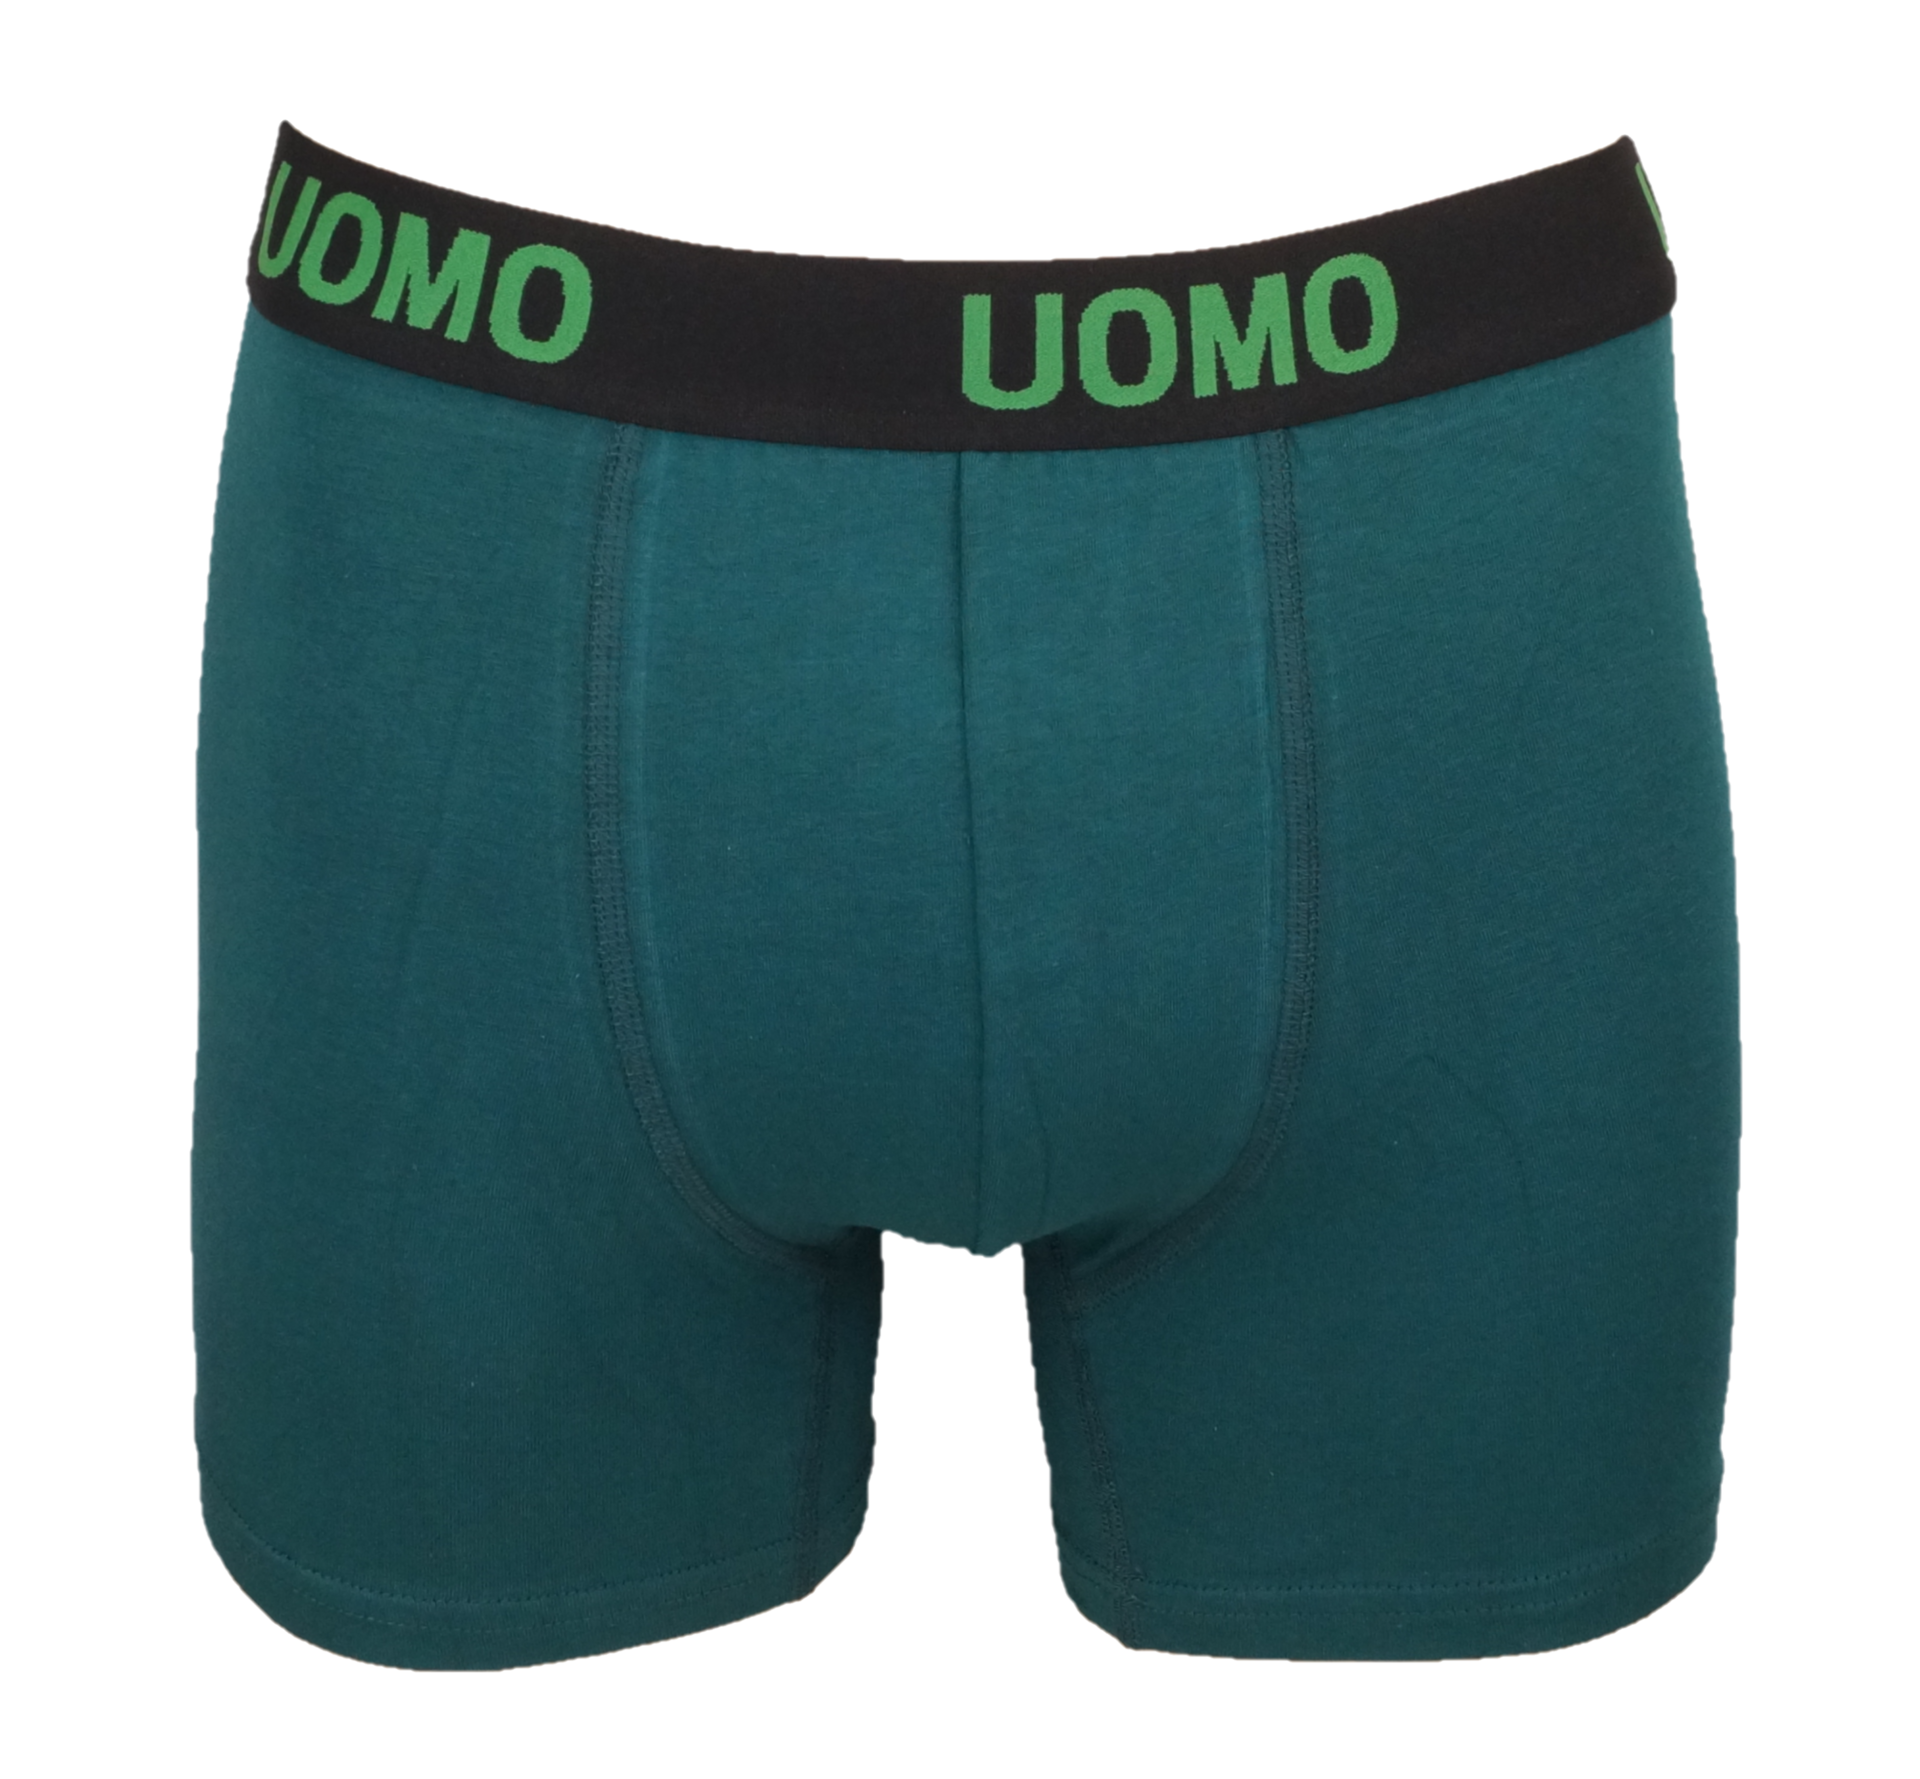 Terug kijken lever Reactor UOMO HEREN BOXERSHORT GROEN - J & C Underwear